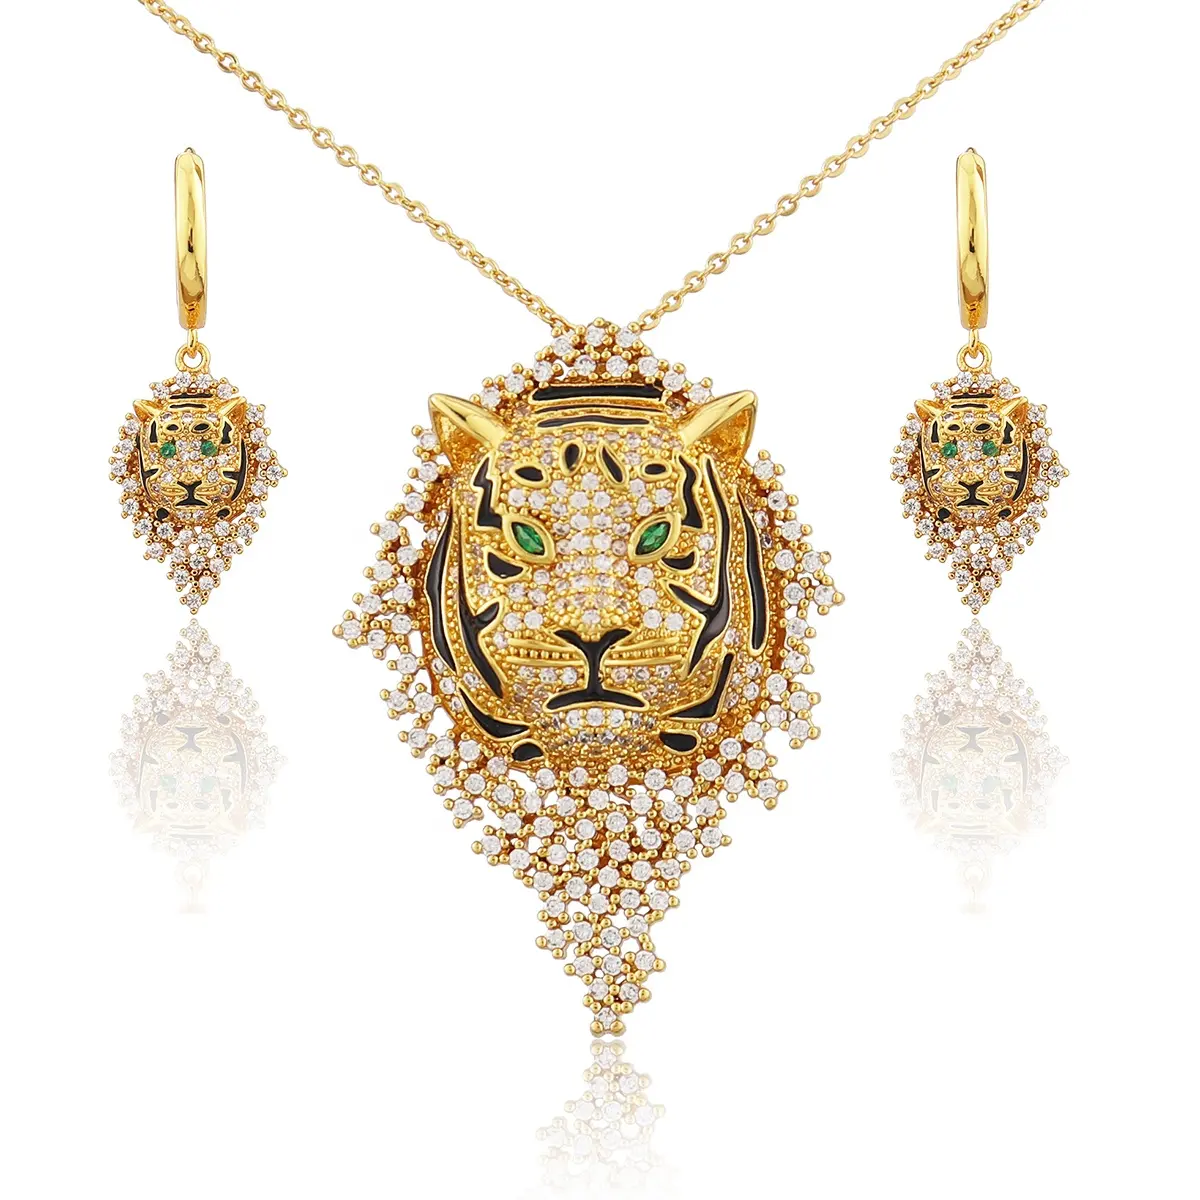 Neueste Design Frauen Schmuck Set Tier Tiger Stil Mode Halskette Ohrringe Schmuck Sets Zirkon plattiert 18 Karat Gold Schmuck Sets